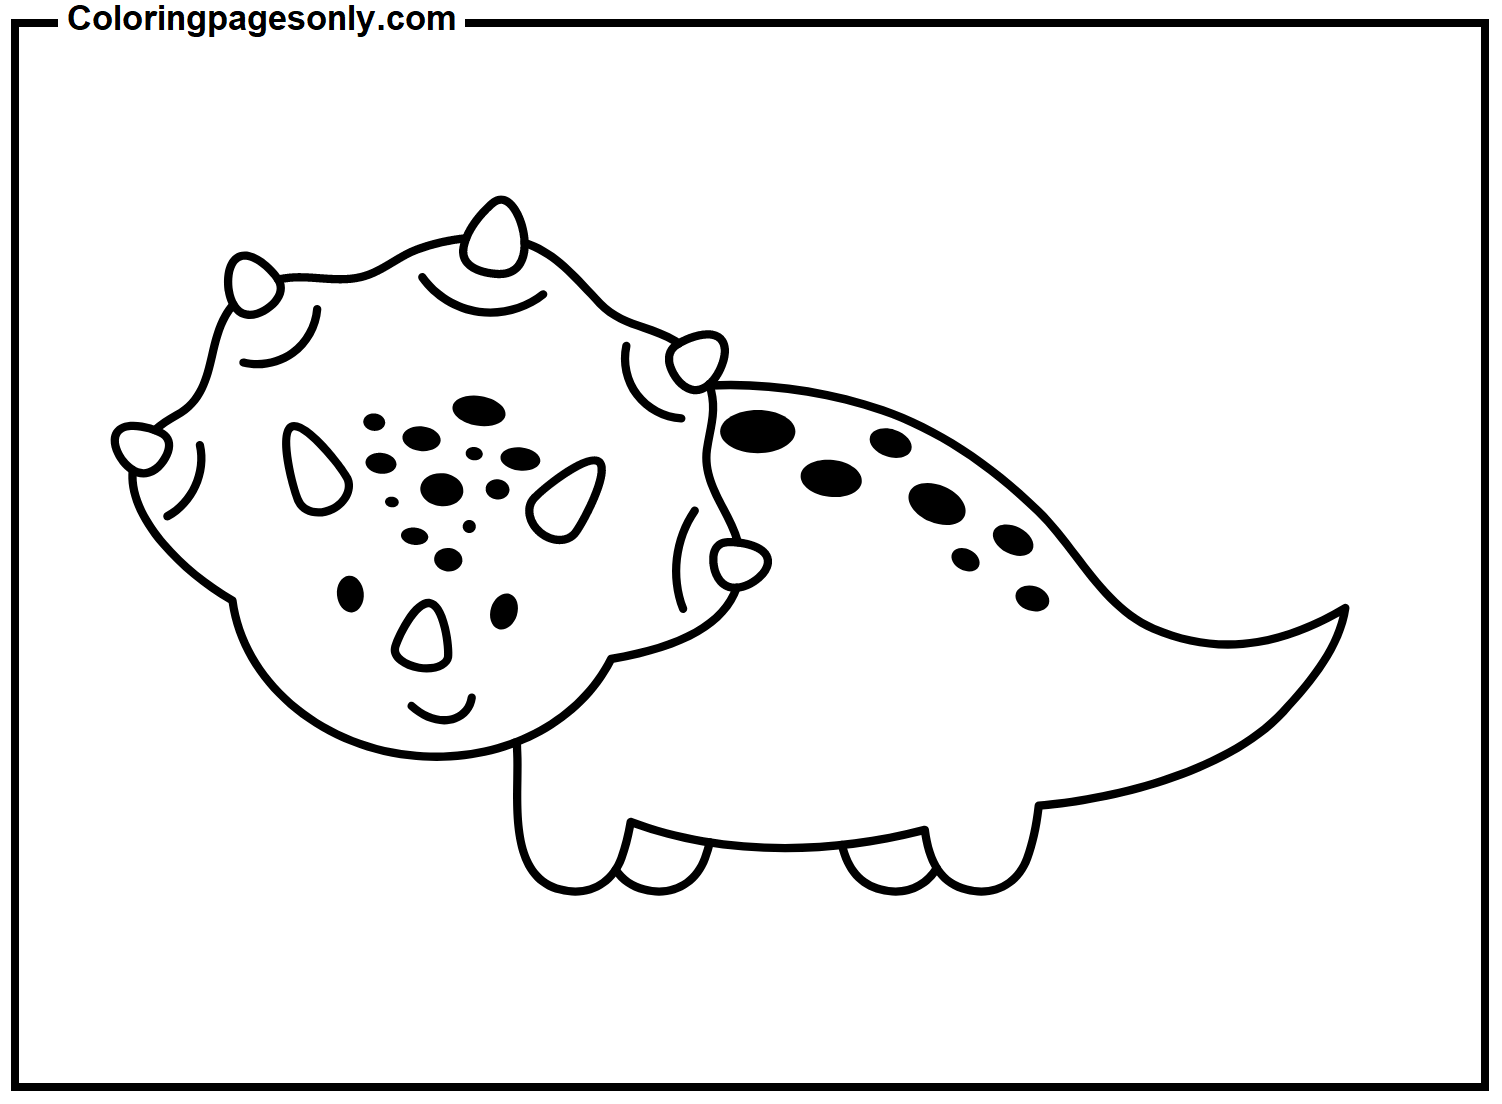 Imagem do Triceratops para imprimir do Triceratops